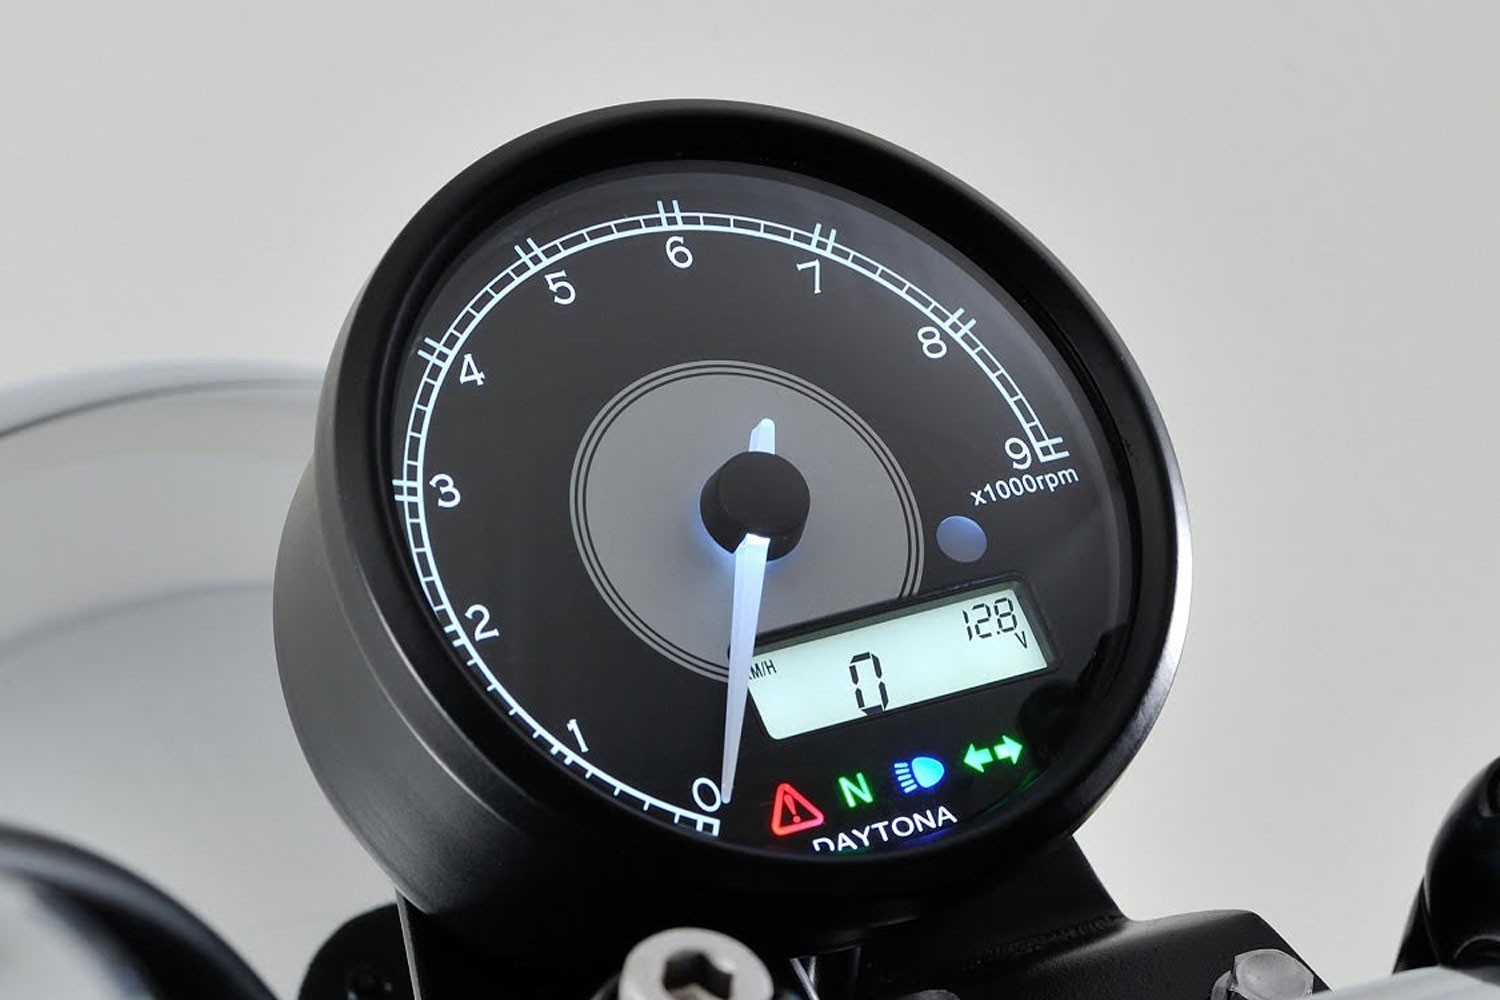 Daytona velocidad impulso transductores dia 18 uso para Velona tacómetro por ejemplo